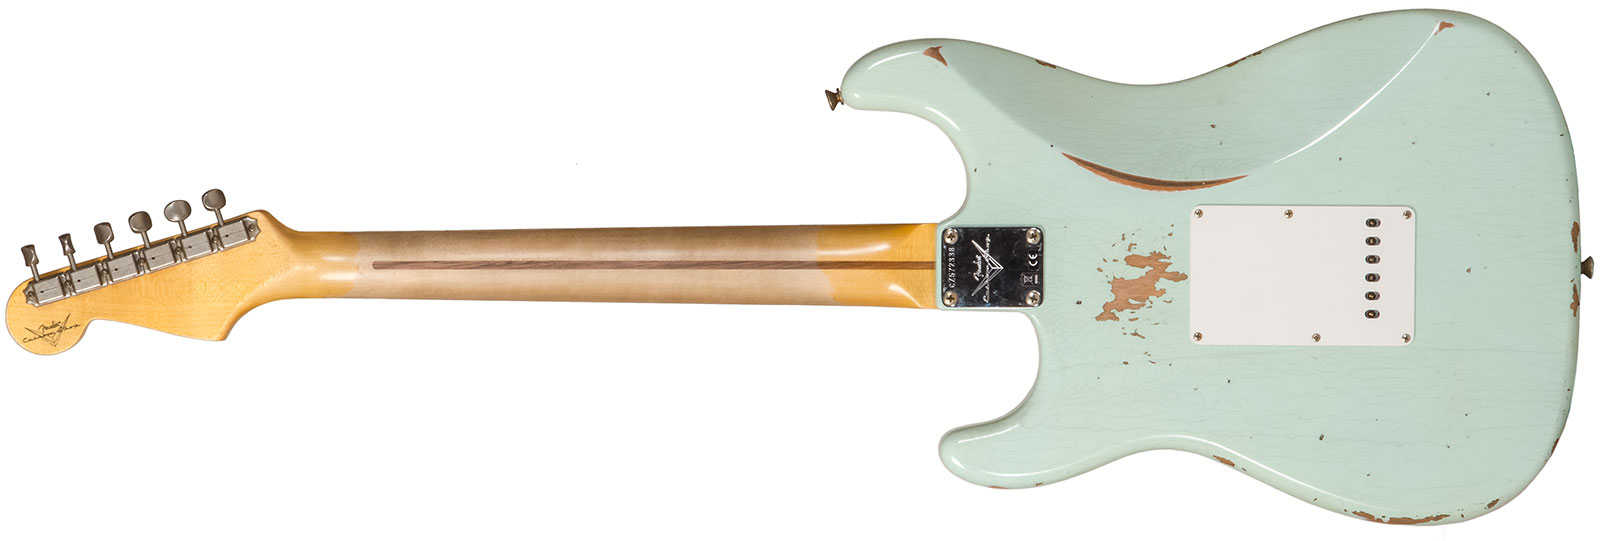 Fender Custom Shop Strat 1958 3s Trem Mn #cz572338 - Relic Aged Surf Green - E-Gitarre in Str-Form - Variation 1